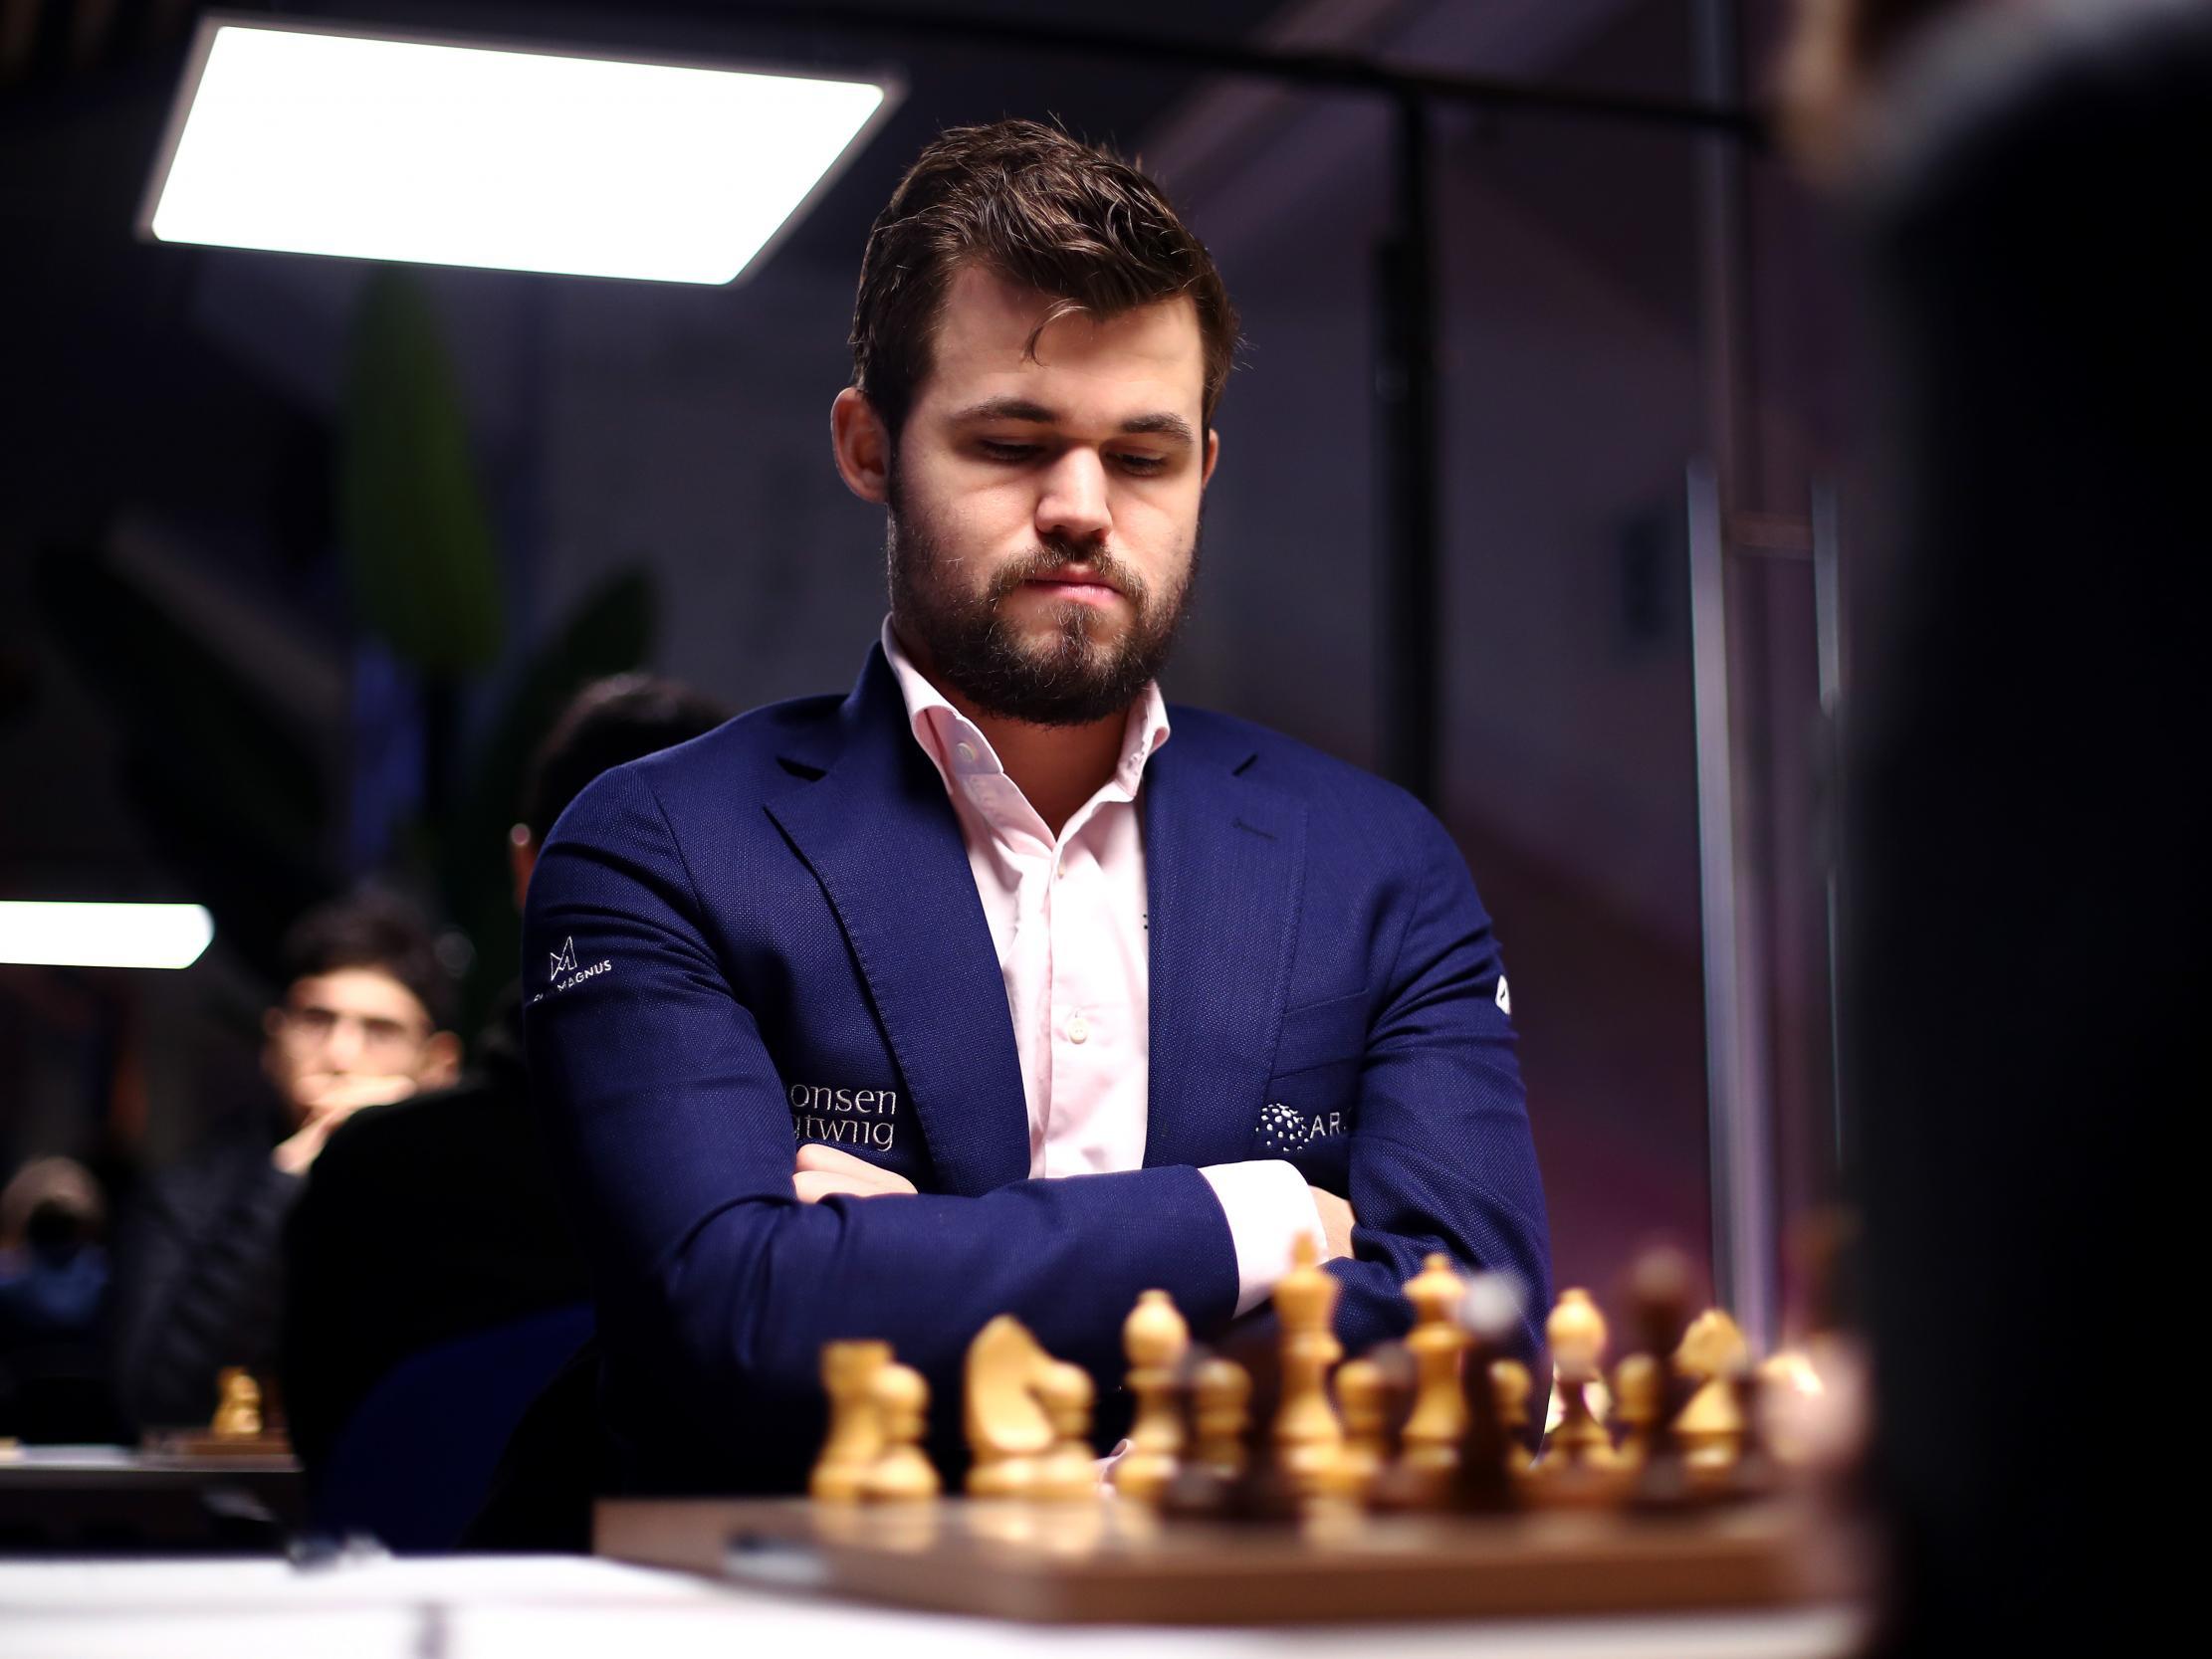 European Online Blitz Chess Championship 2020 gets underway